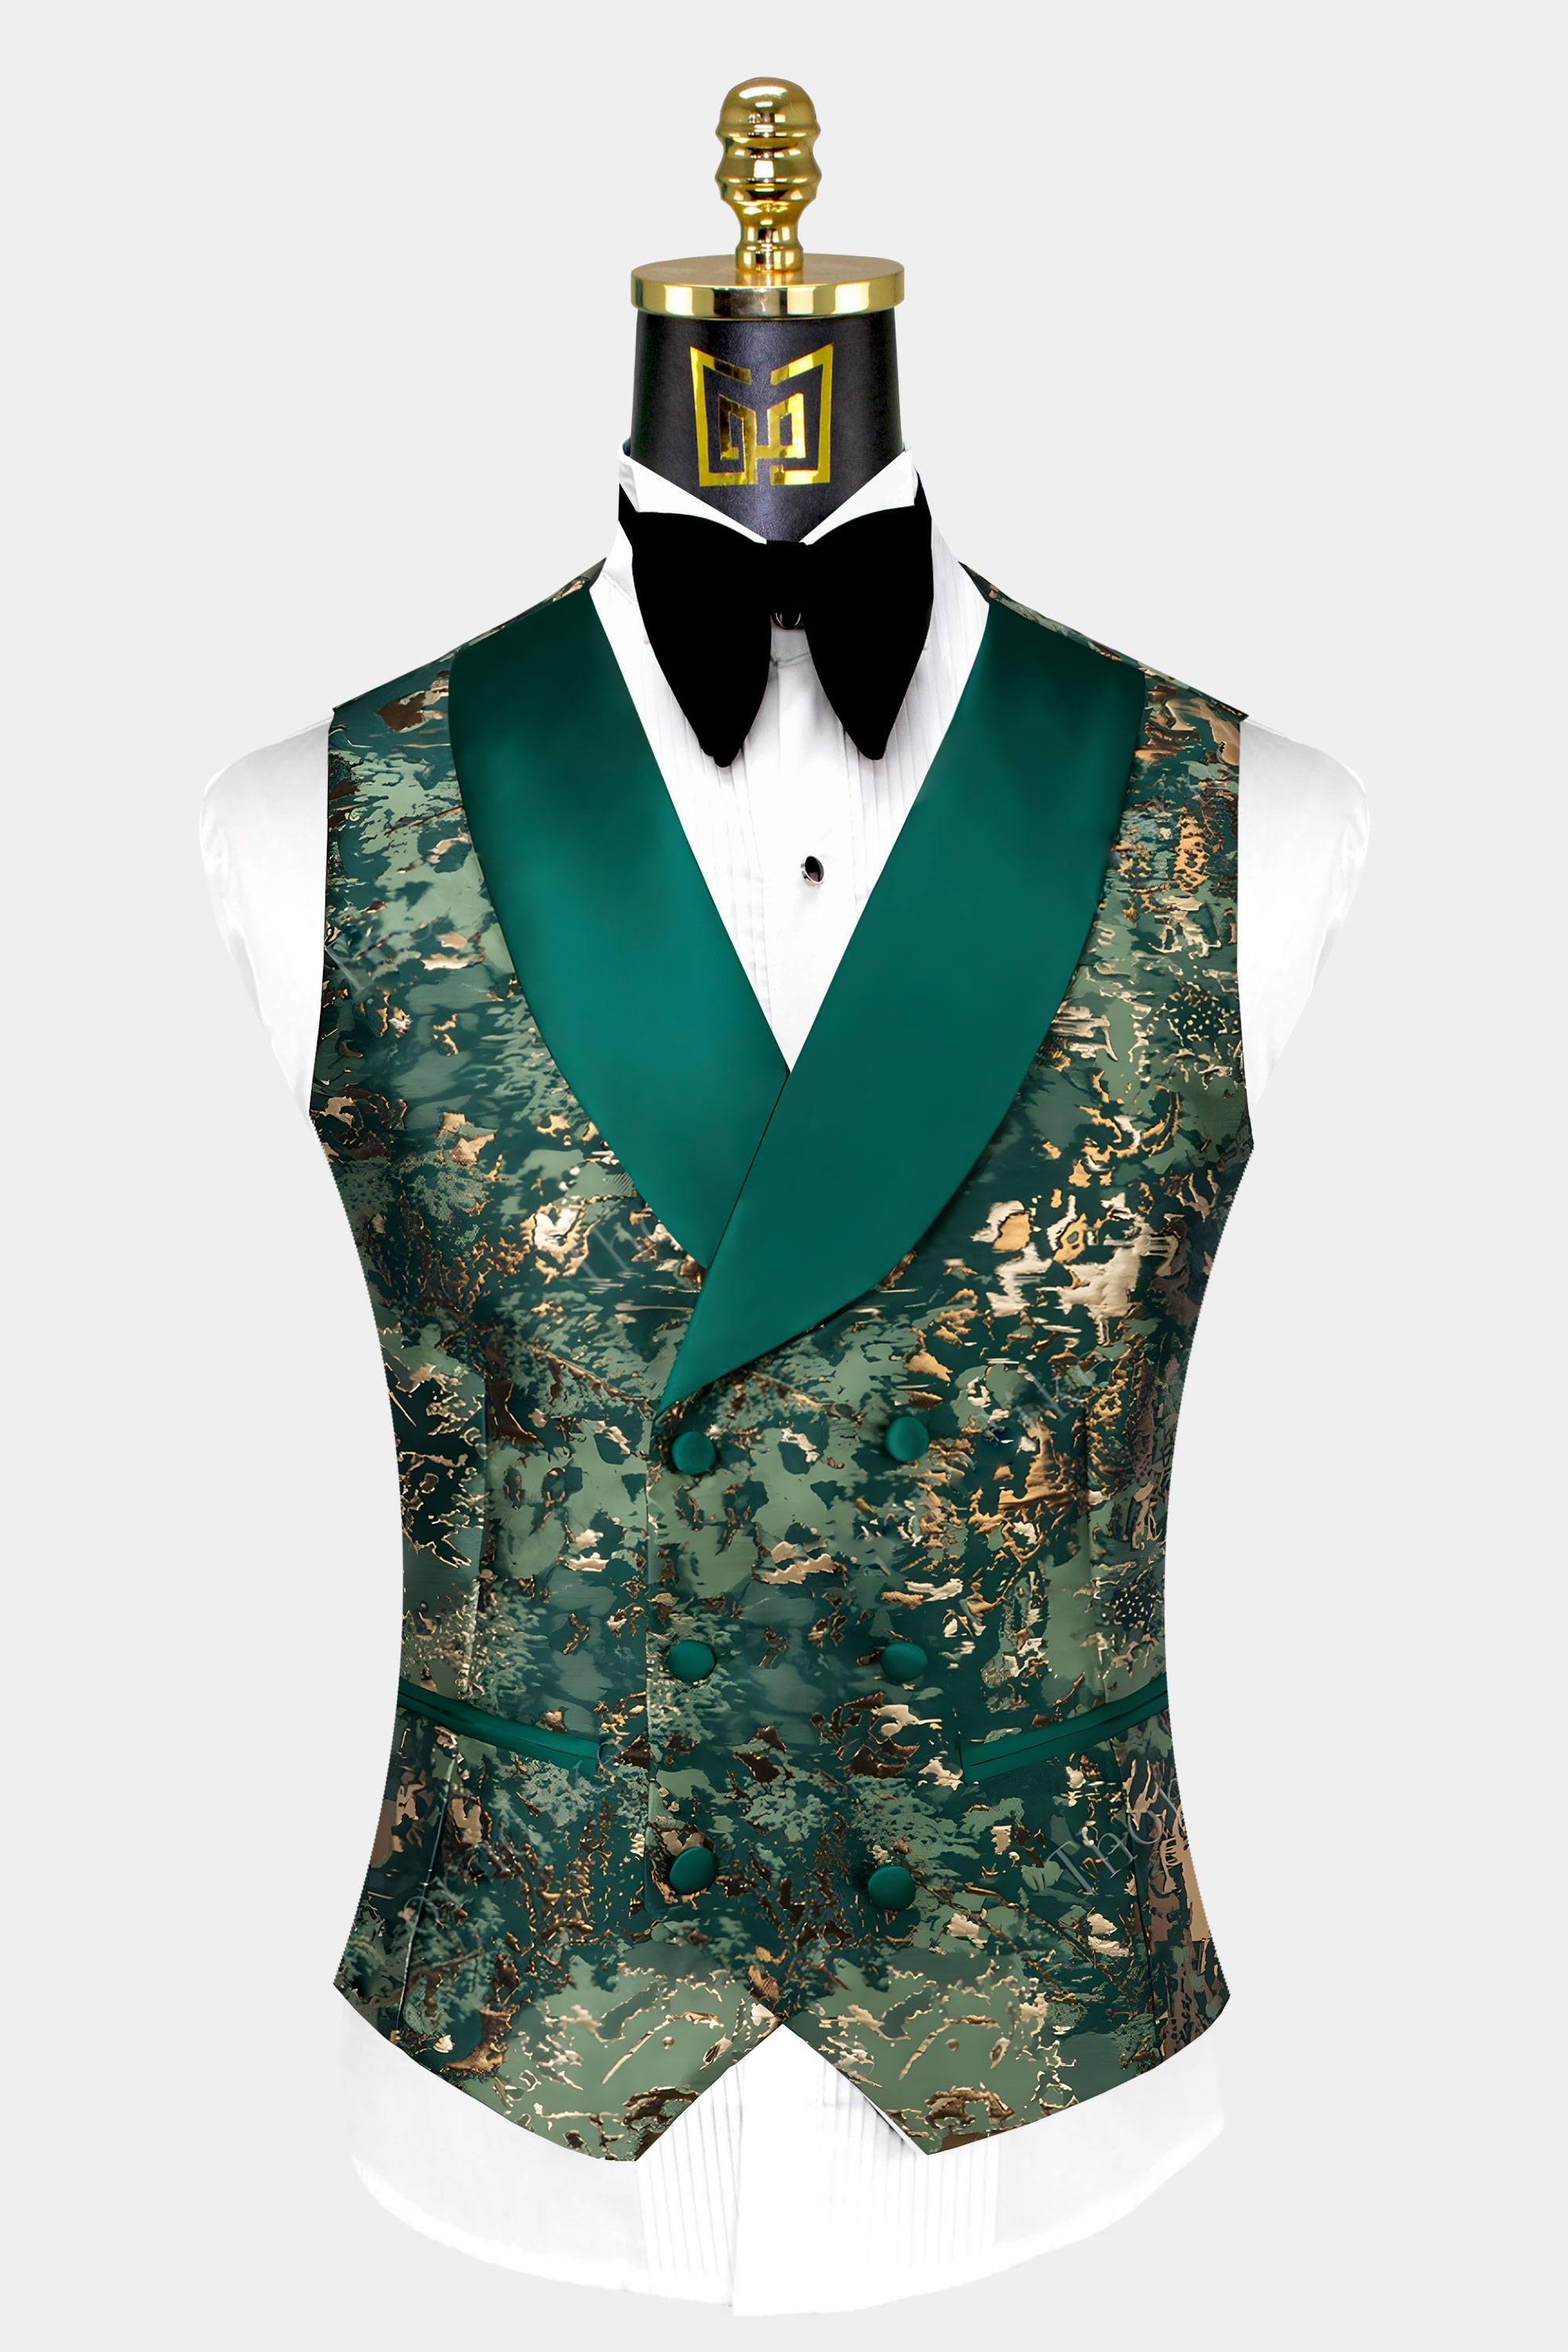 Green-and-Gold-Camo-Tuxedo-Vest-from-Gentlemansguru.com